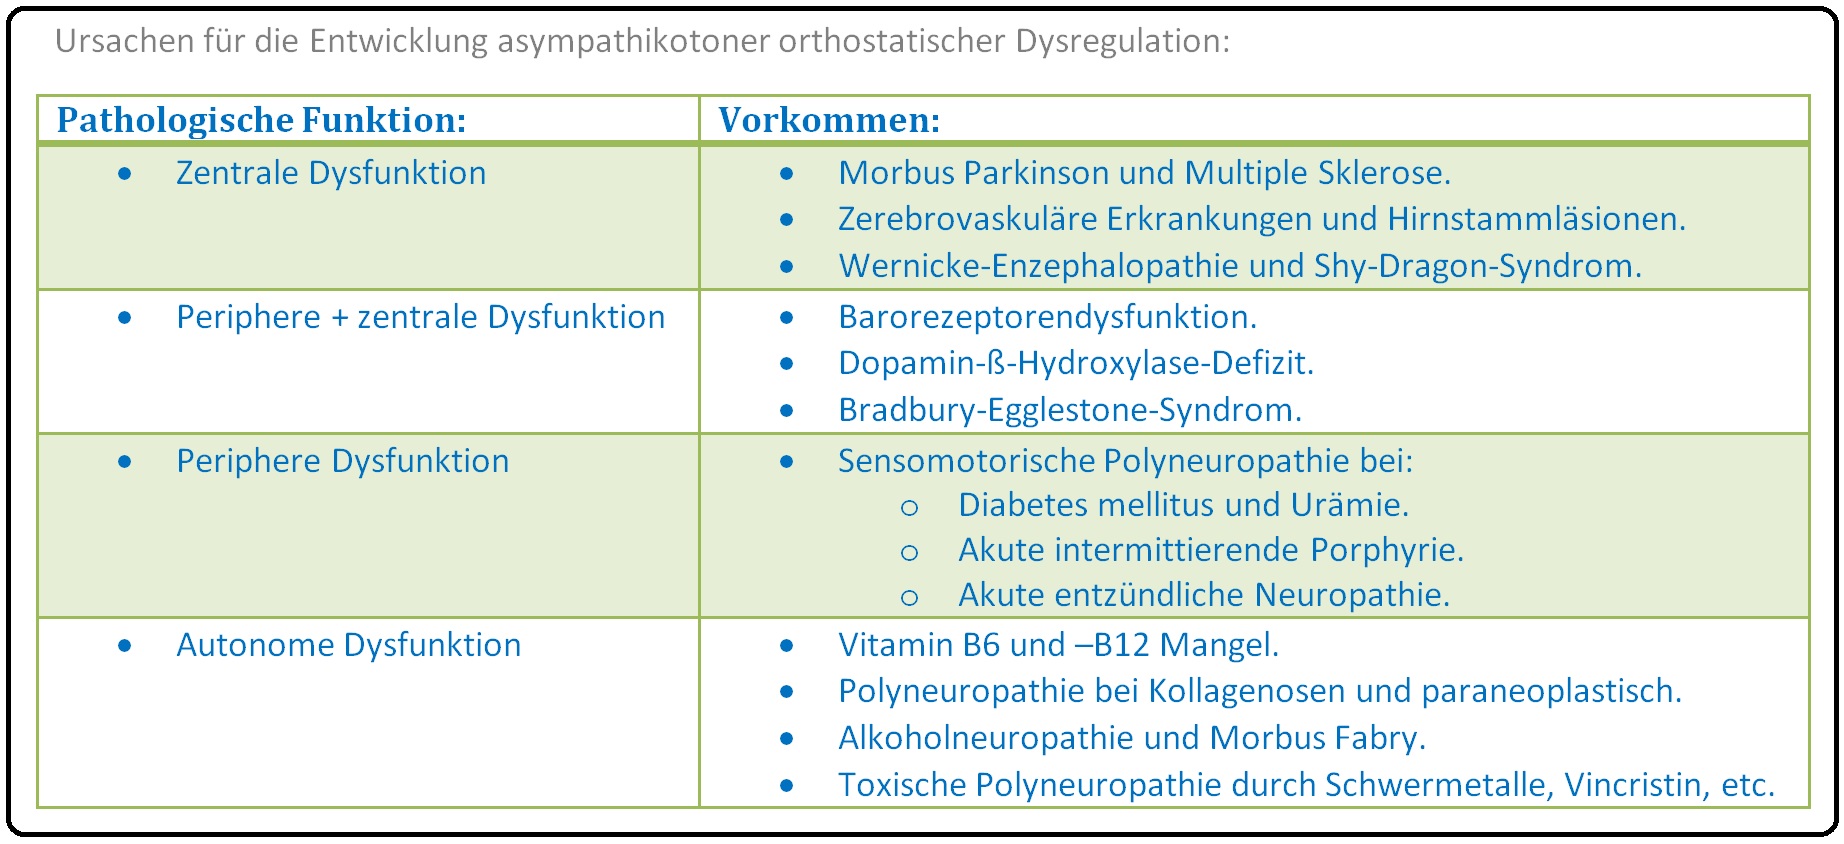 523 Ursachen für die Entwicklung asympathikotoner orthostatischer Dysregulation